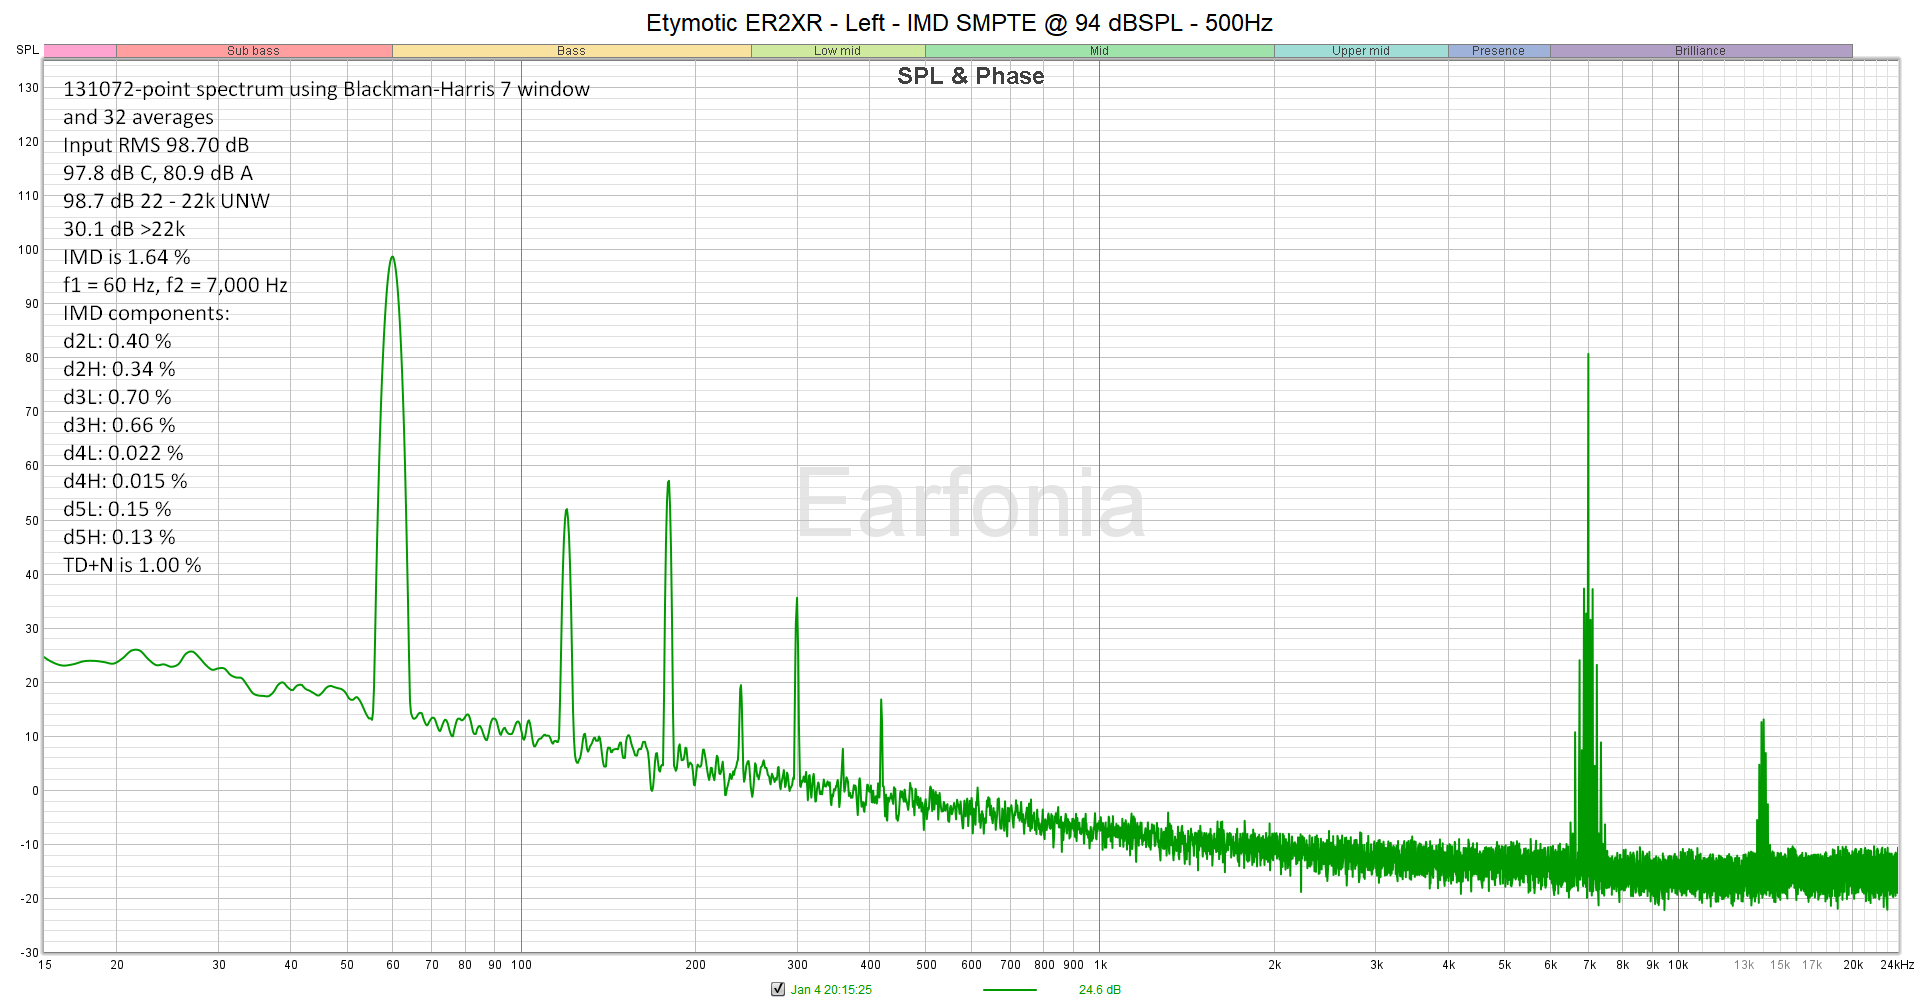 Etymotic ER2XR - Left - IMD SMPTE at 94 dBSPL - 500Hz.png